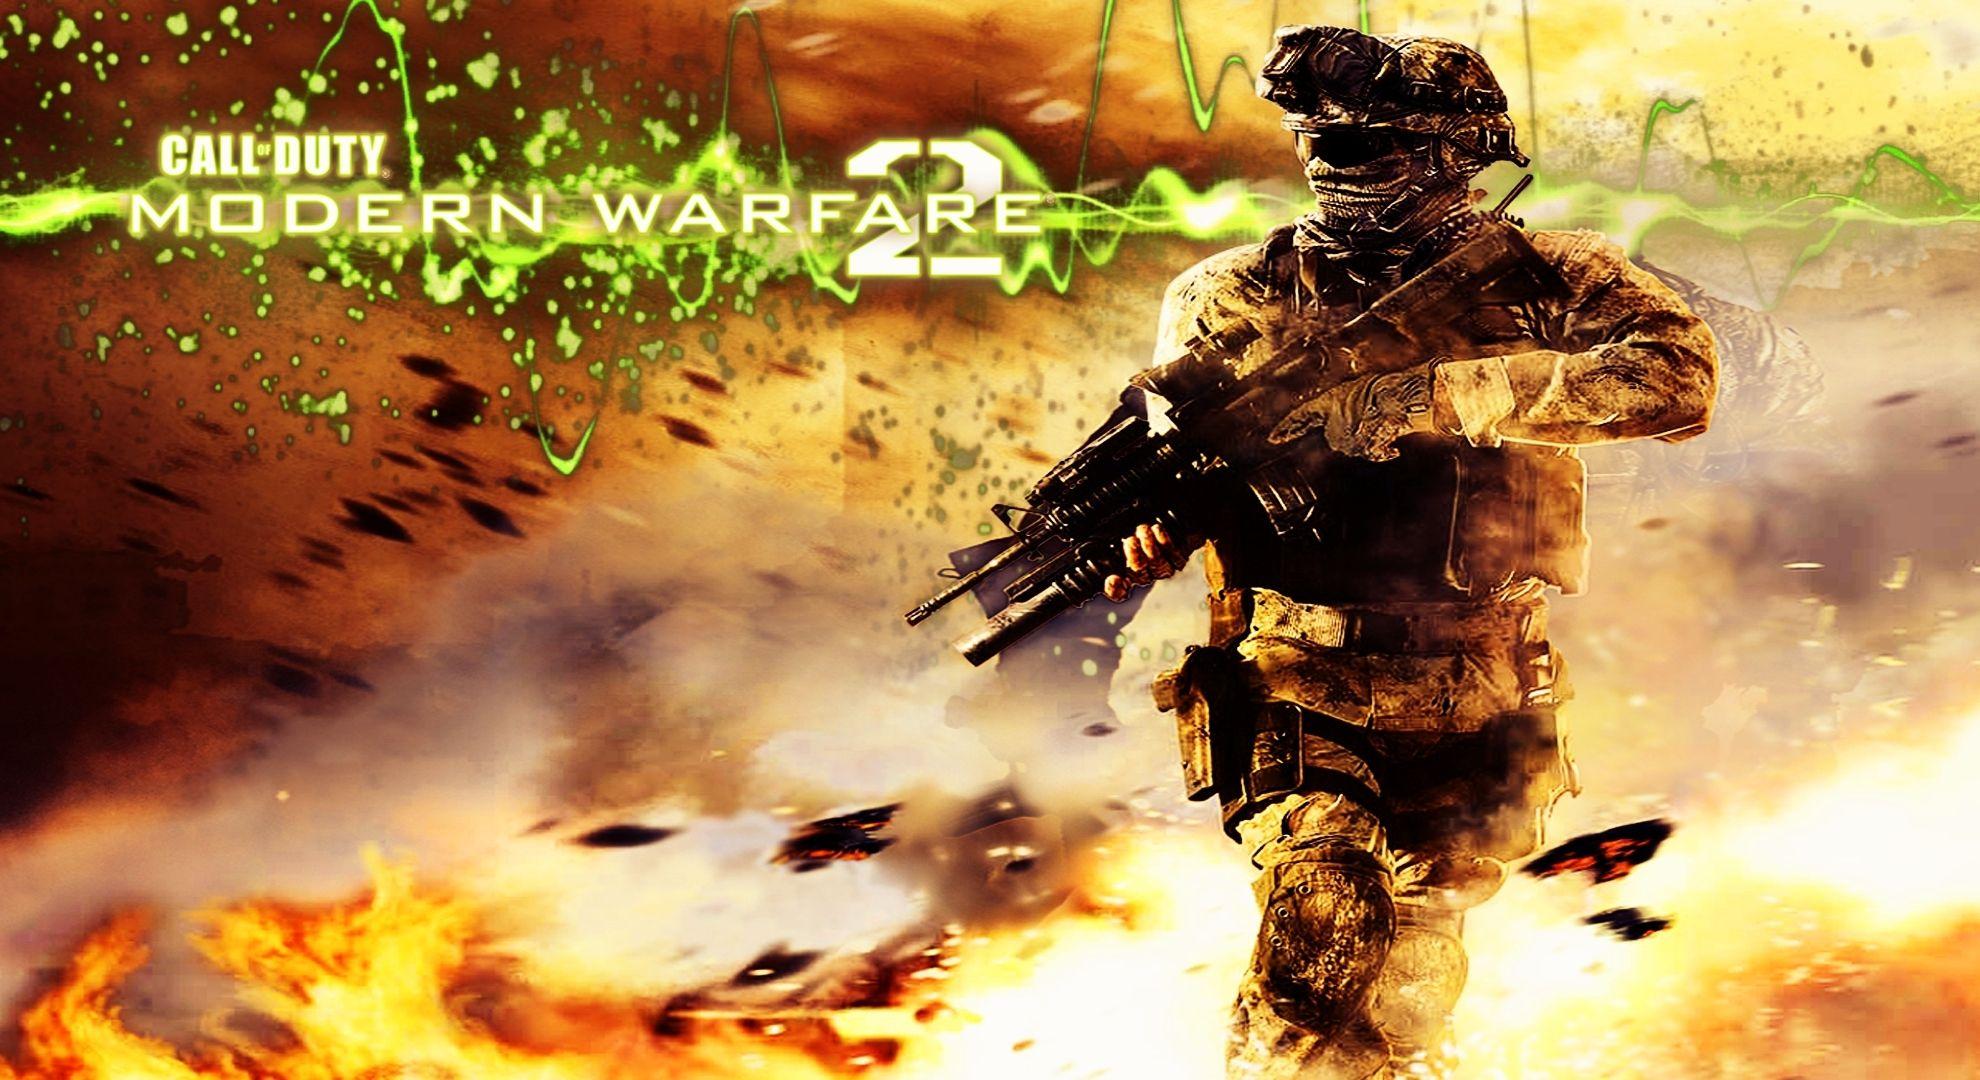 ZZL:78 Of Duty Modern Warfare 2 HD Image Free Large Image